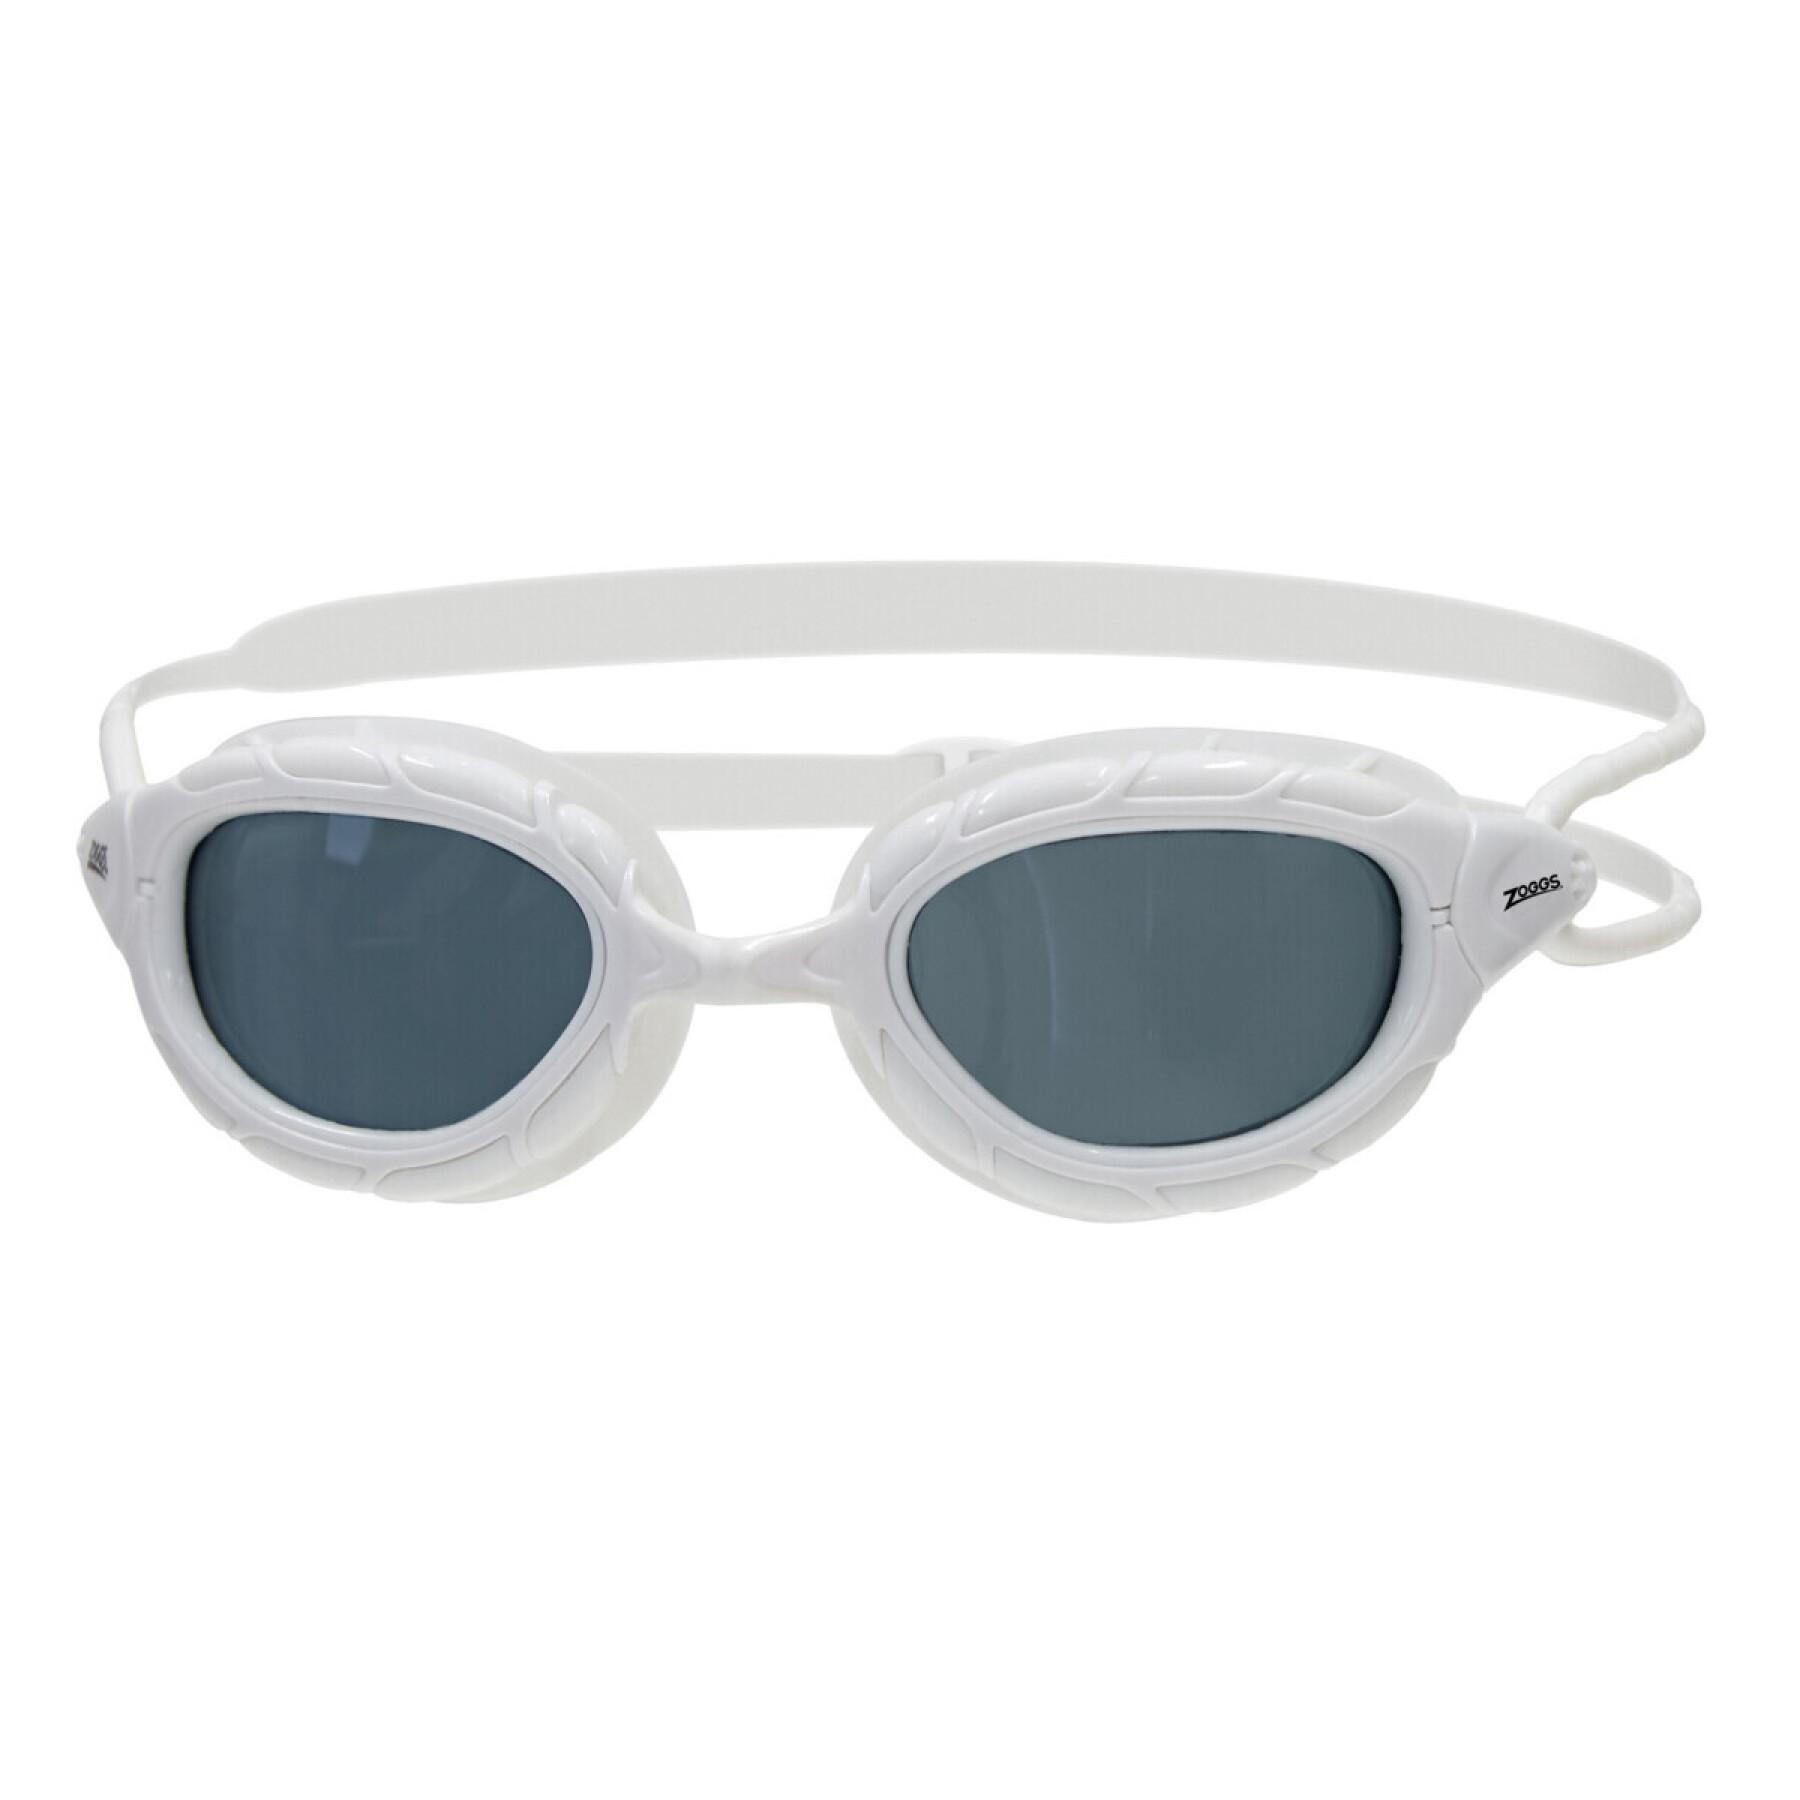 Swimming goggles Zoggs Predator